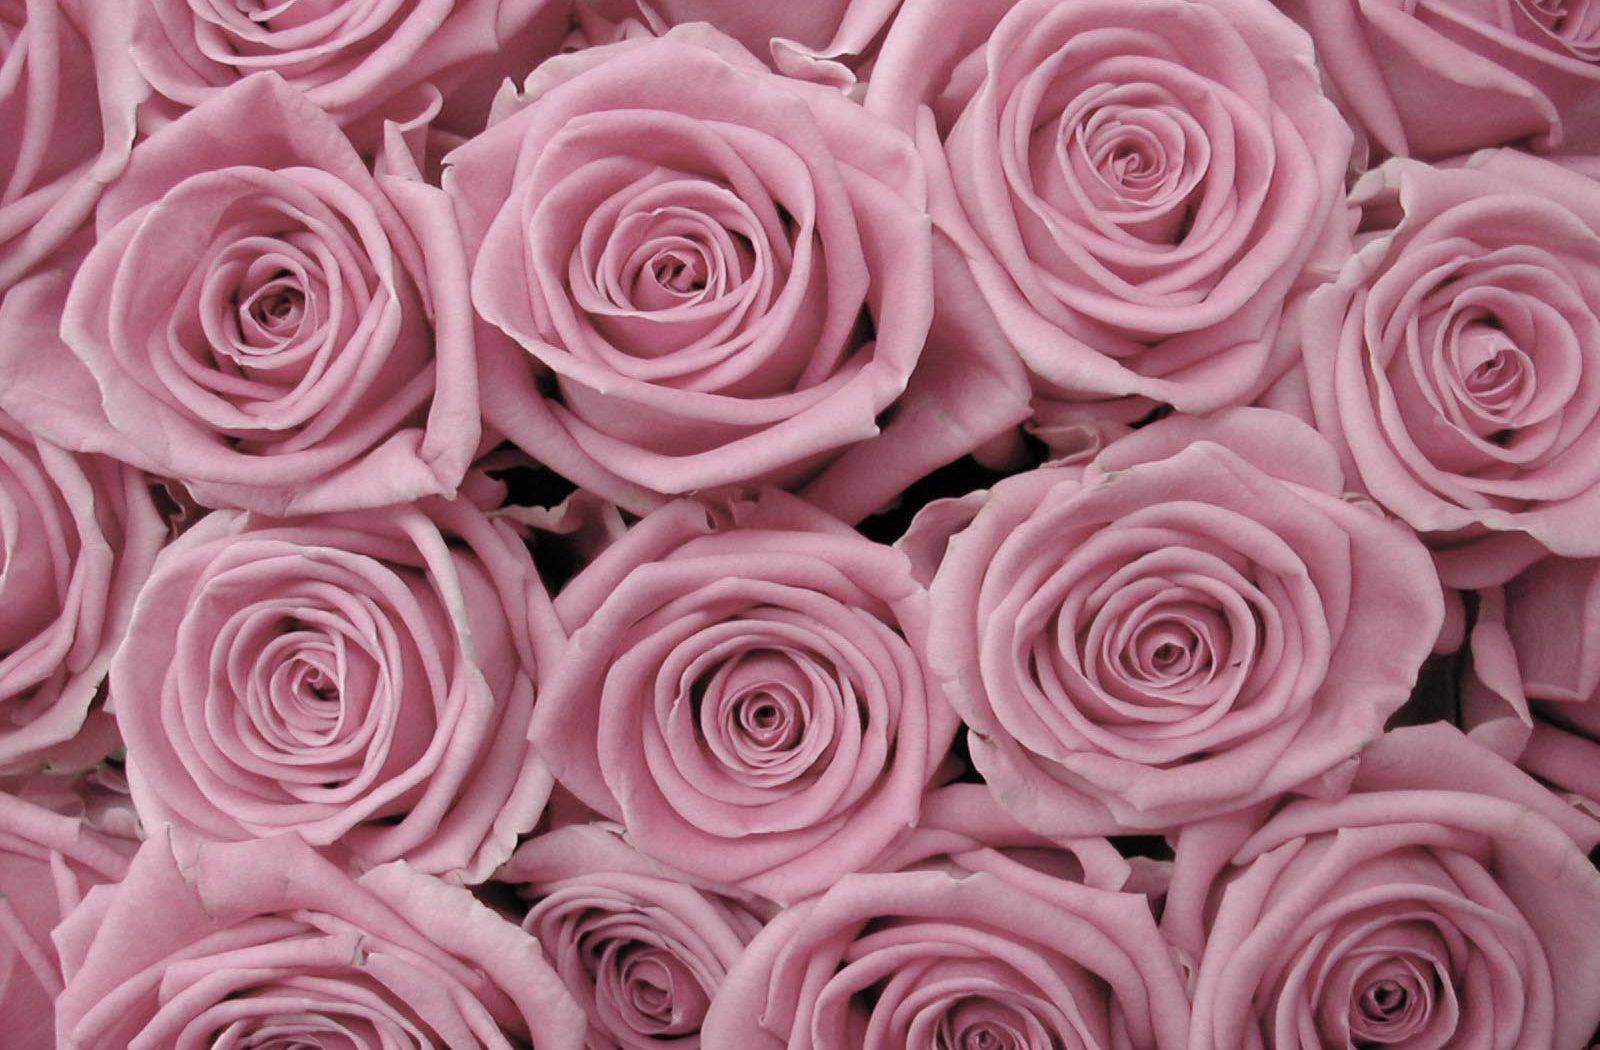 rosentapete tumblr,gartenrosen,rose,rosa,blume,blütenblatt